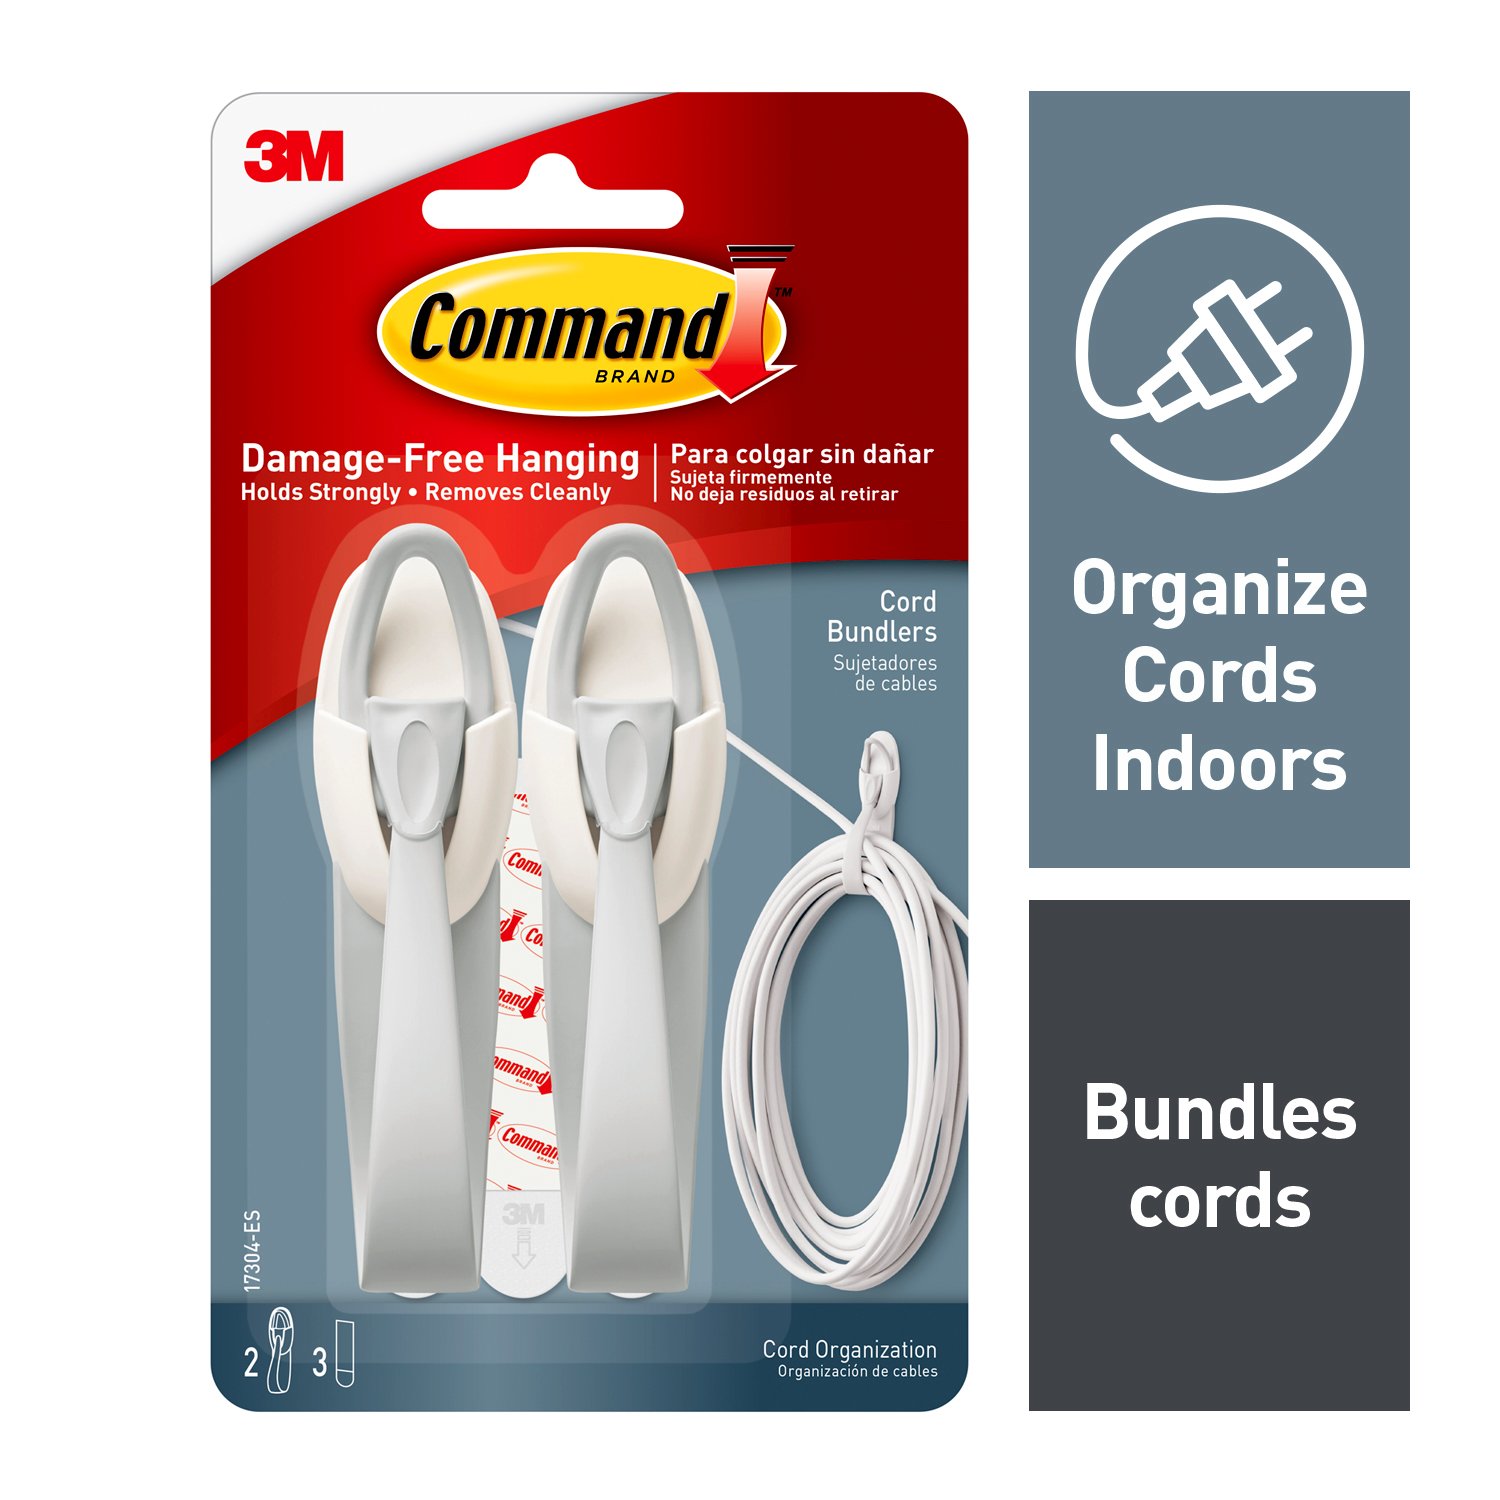 7100129501 - Command Cord Bundlers, 17304-ES, 2 bundlers, 3 strips